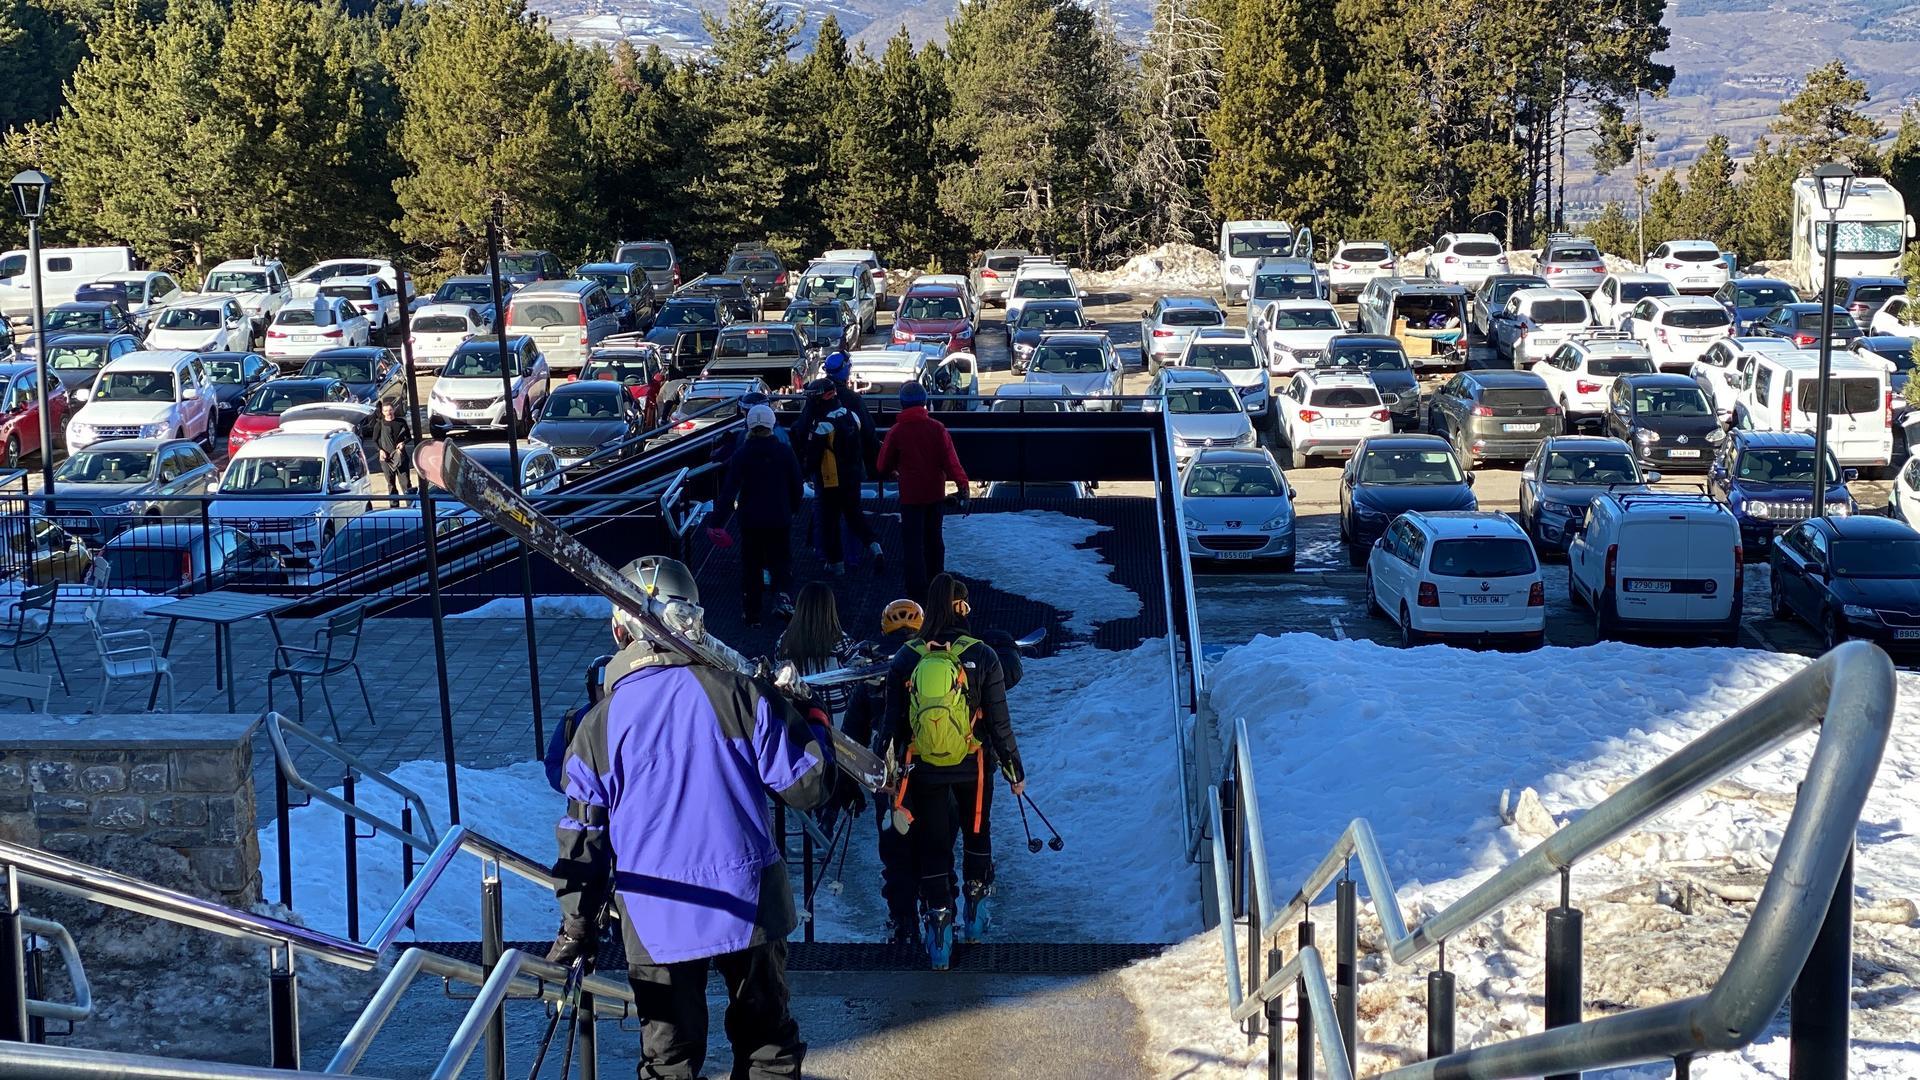 Pla sencer de diversos esquiadors accedint a l'aparcament de l'estació de Masella (Cerdanya) on es veu una part dels vehicles estacionats. Imatge publicada el 21 de desembre de 2021. (Horitzontal)